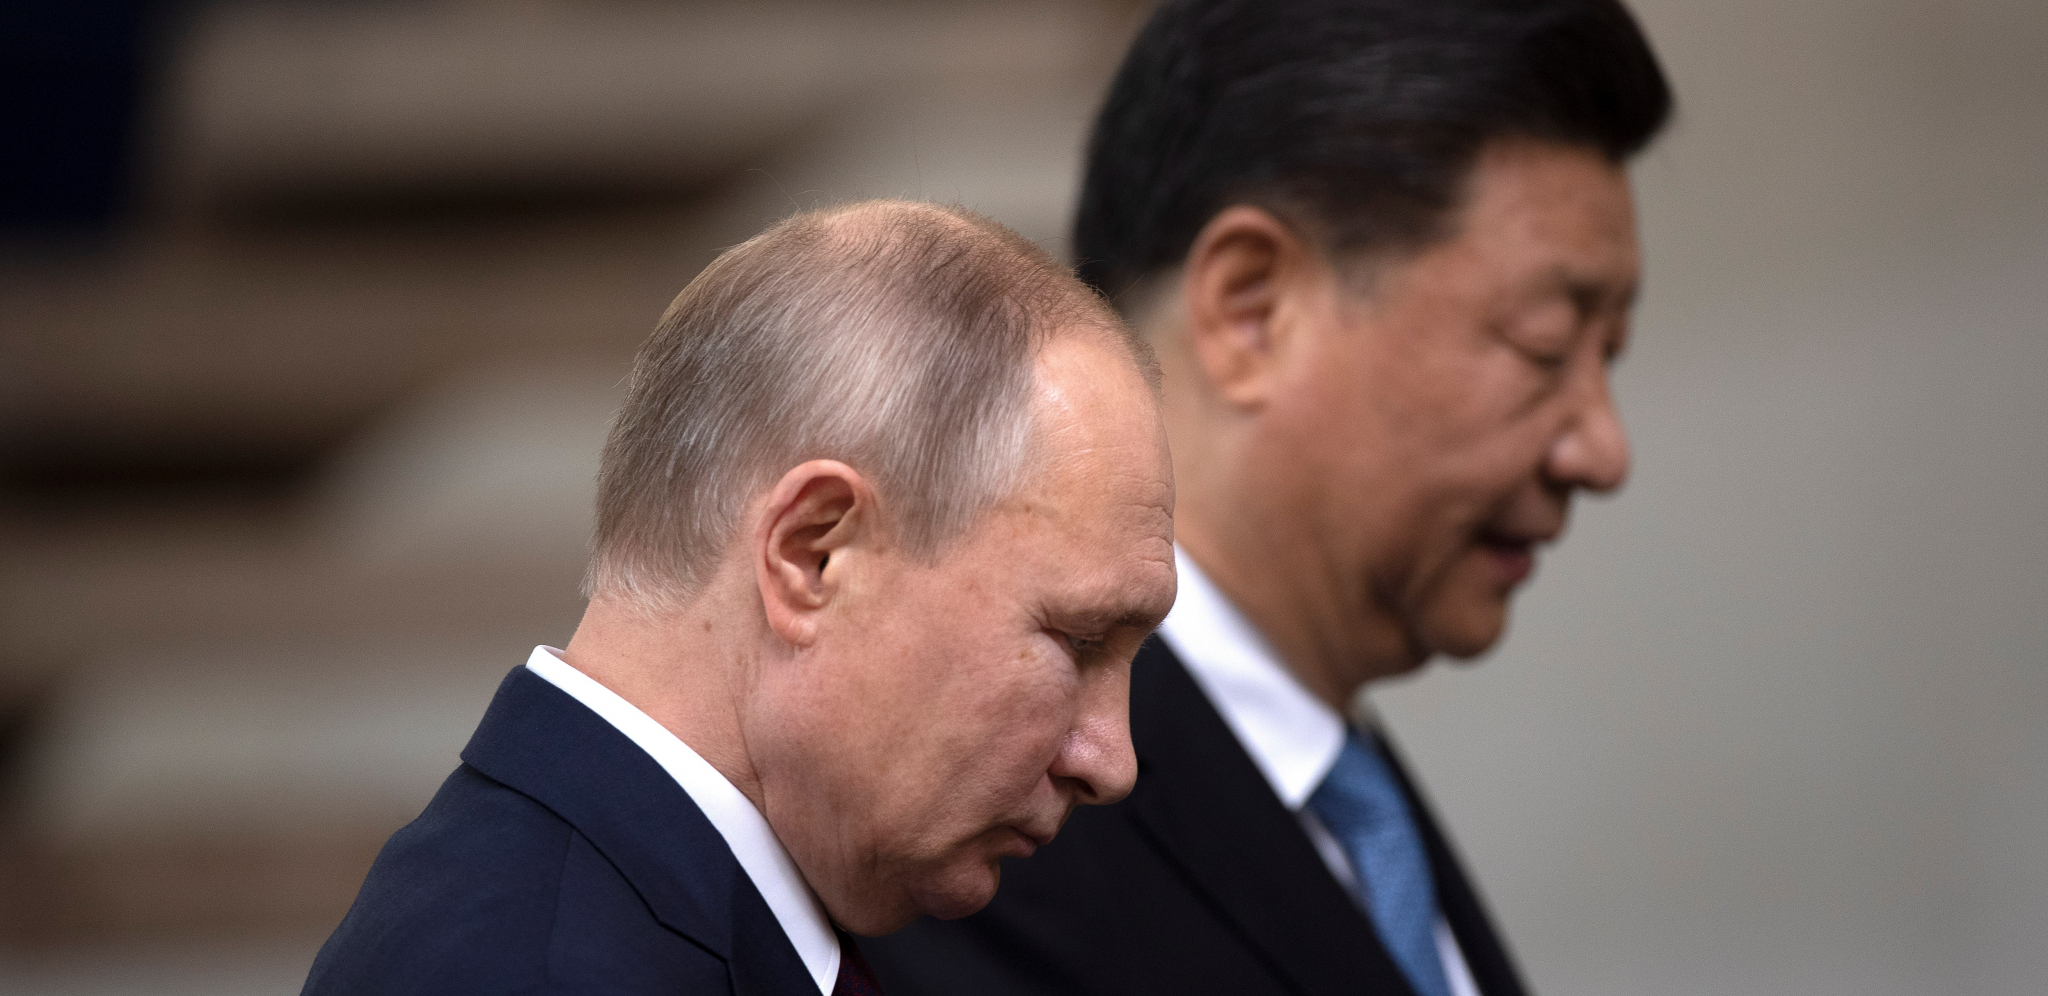 ZAPADNI VETROVI DUVAJU Rusija i Kina neće dozvoliti stvaranje druge Ukrajine